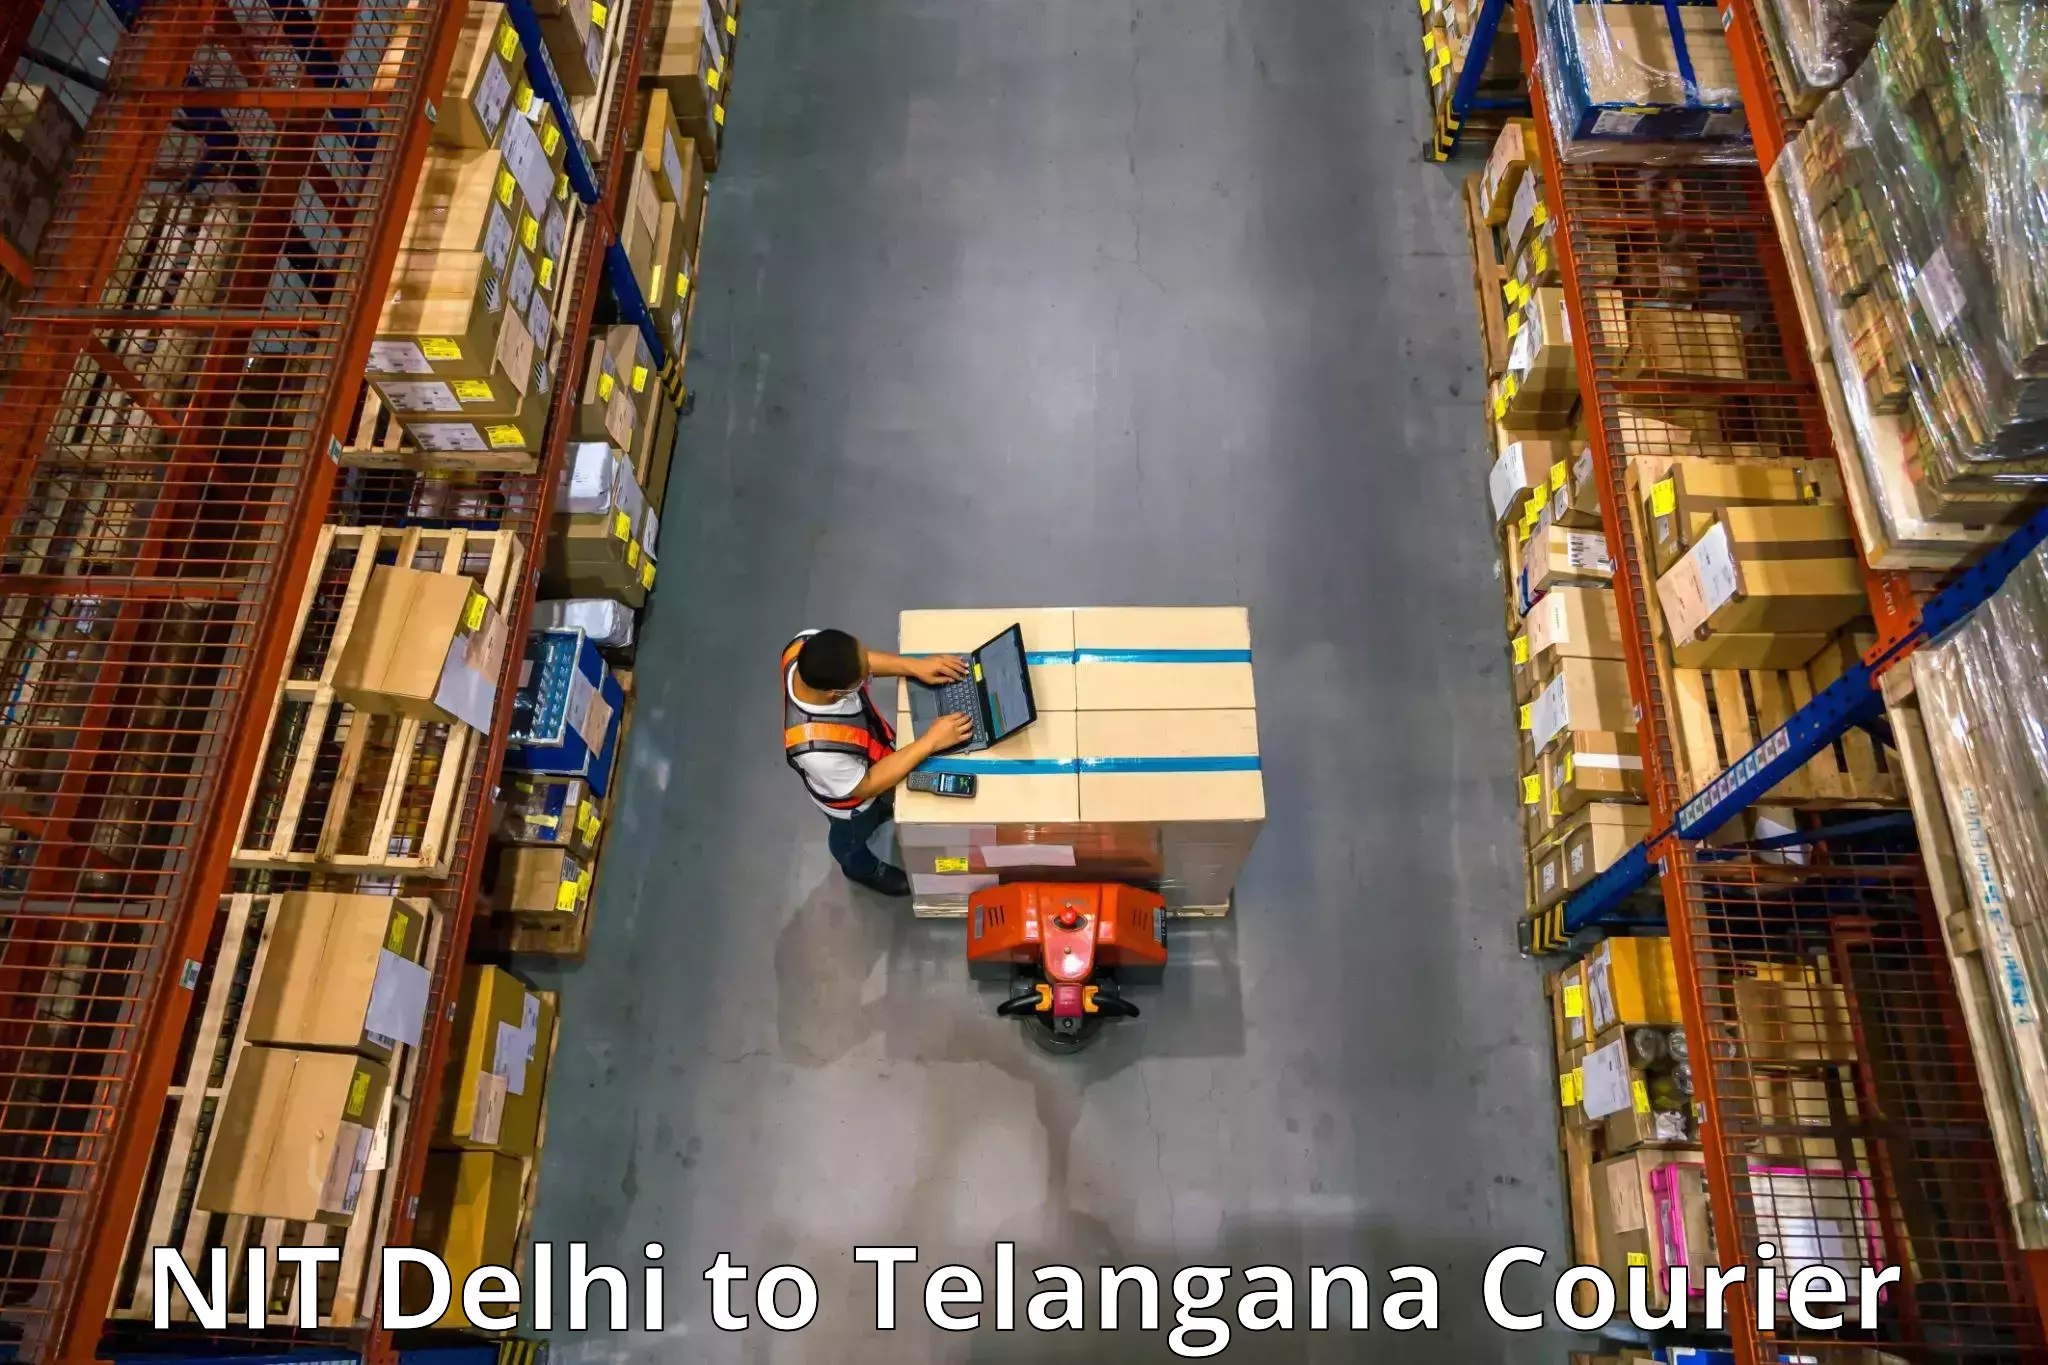 Furniture transport specialists NIT Delhi to Netrang